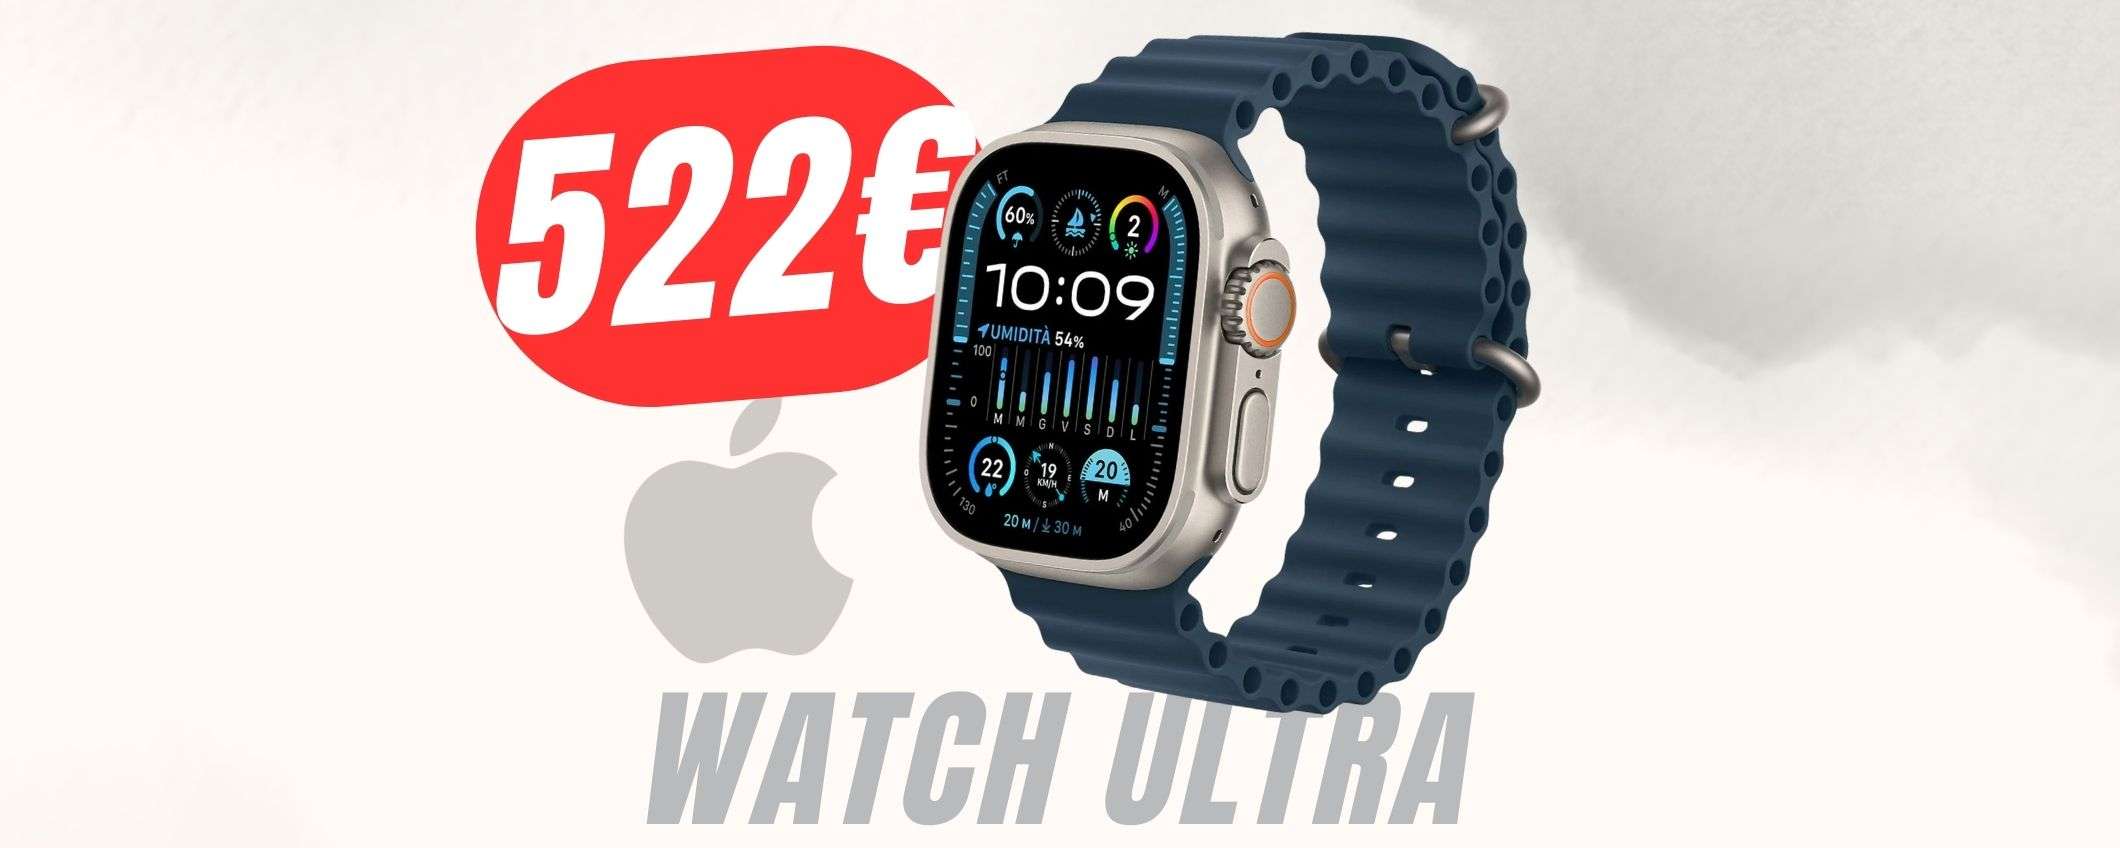 Apple Watch Ultra a 522€ grazie al COUPON eBay: fai presto!